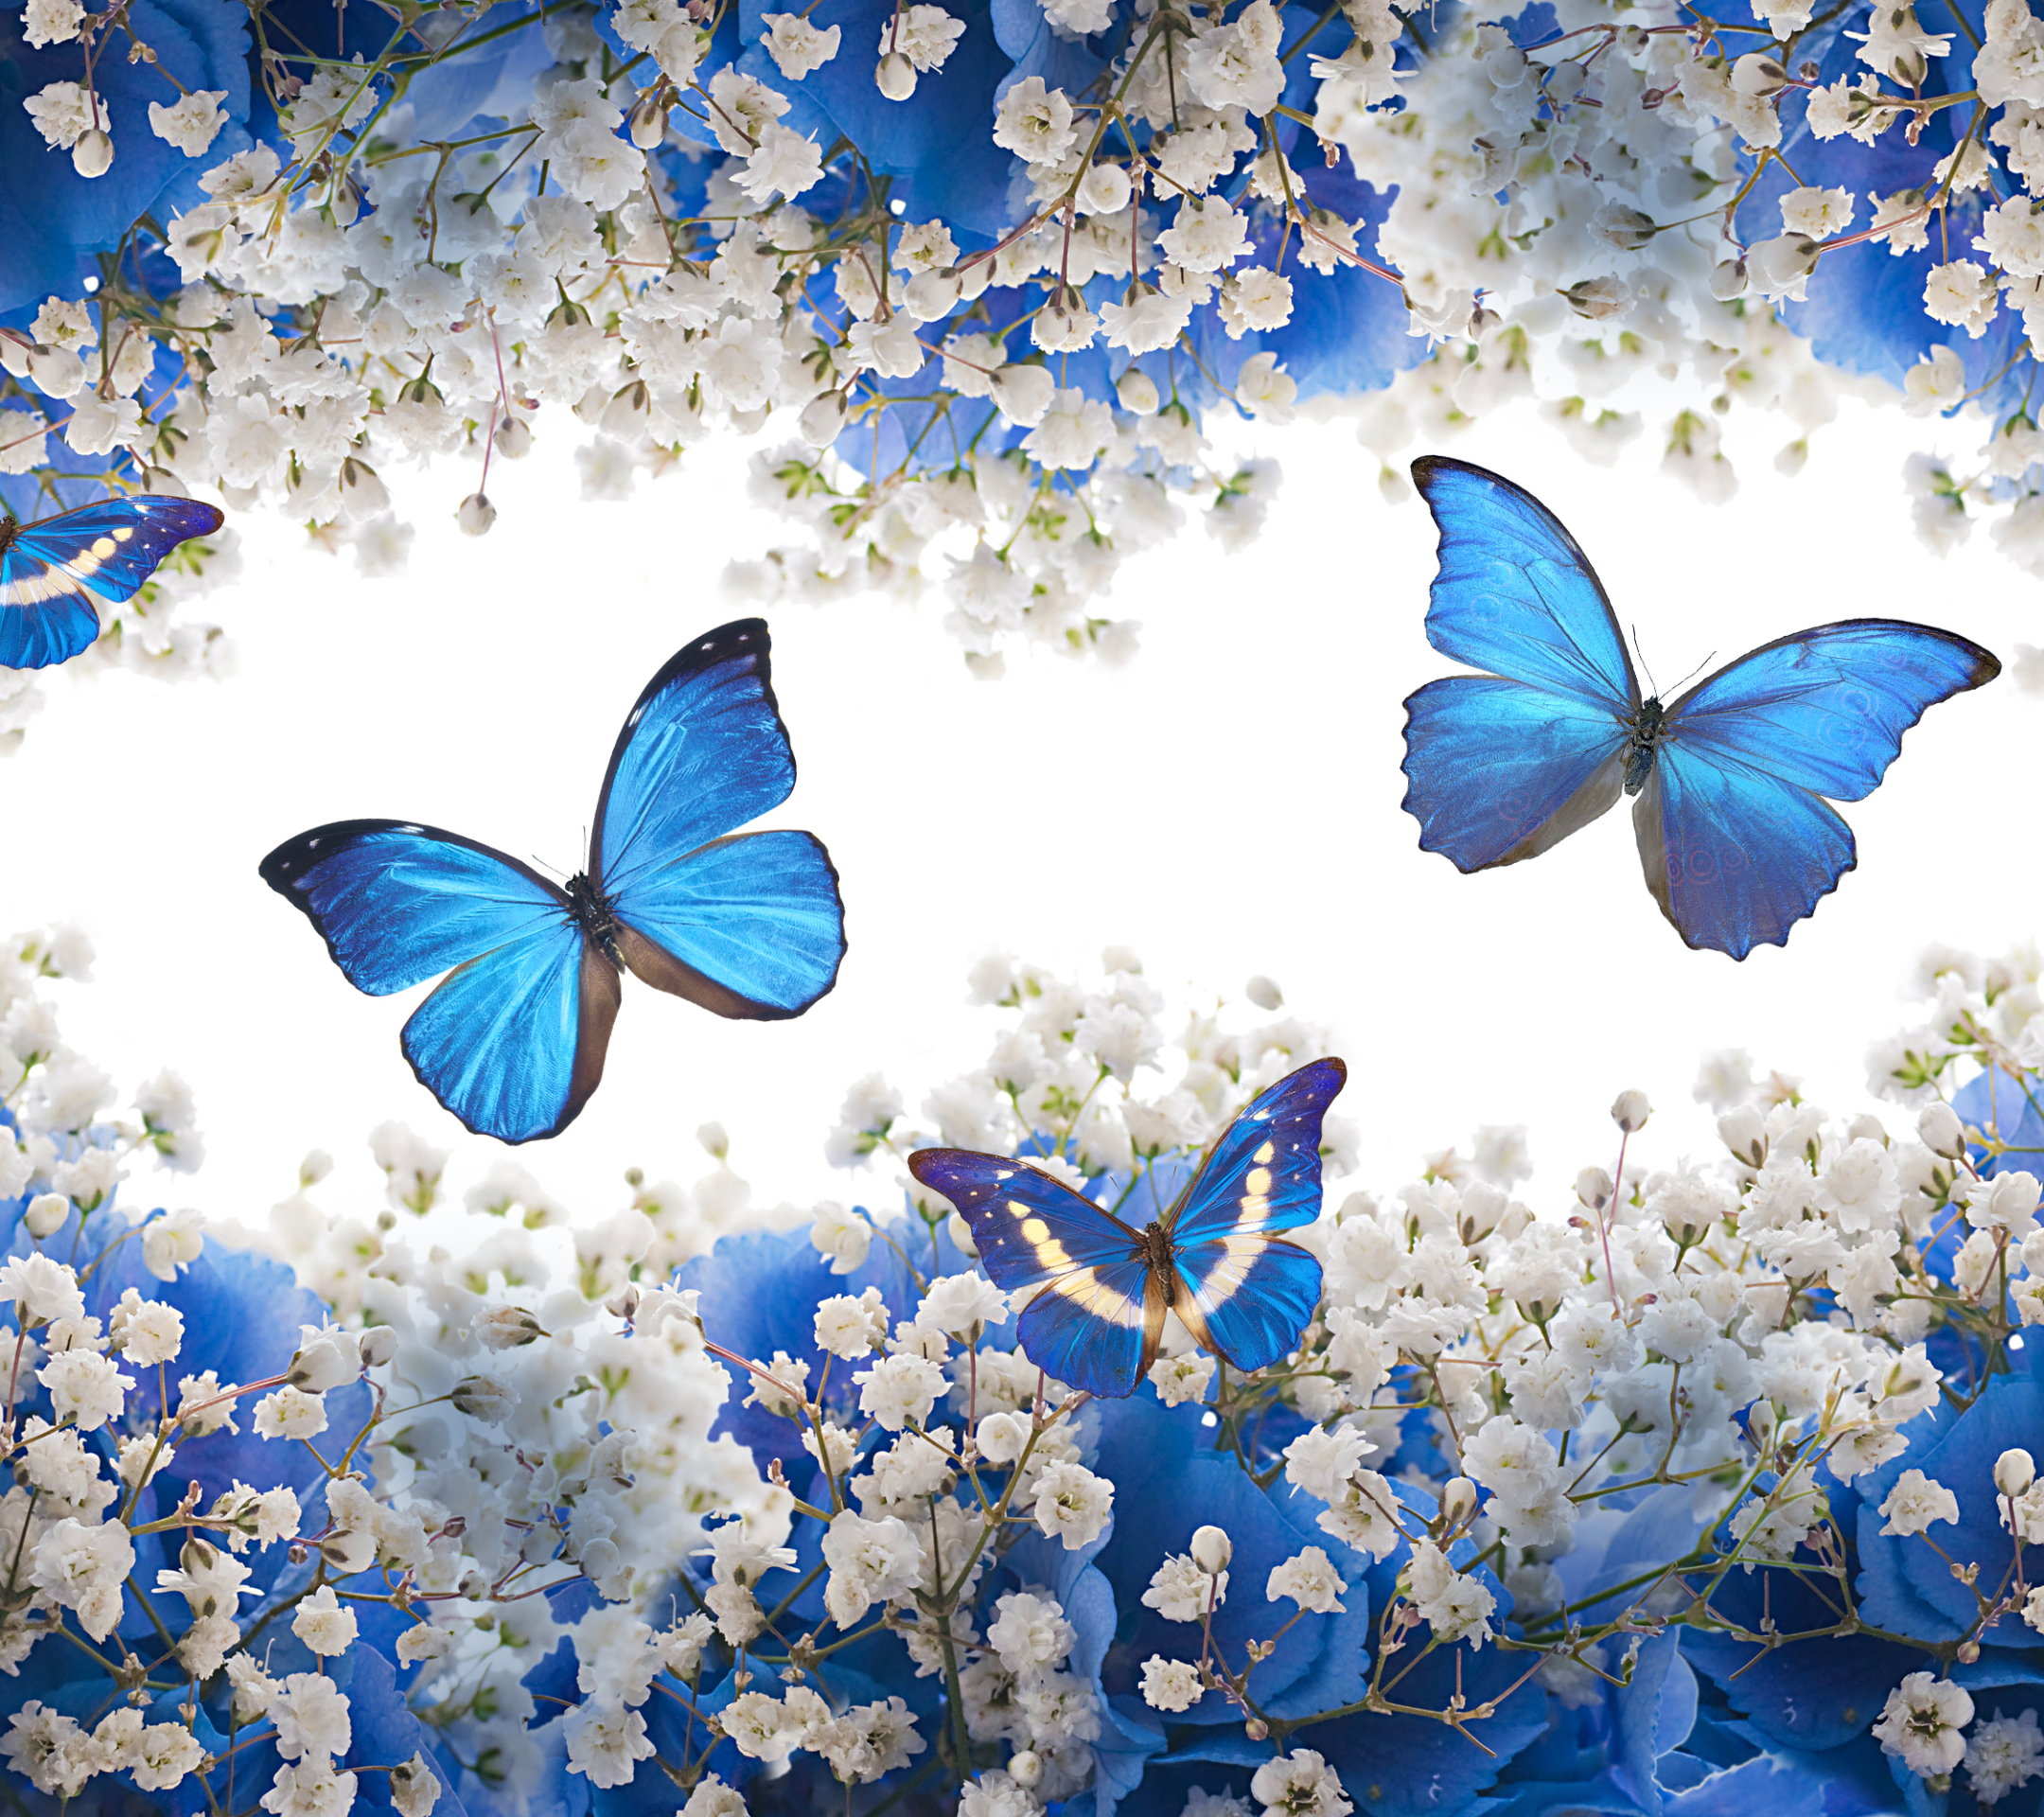 Скачать обои бесплатно Цветок, Синий, Бабочка, Белый Цветок, Художественные картинка на рабочий стол ПК